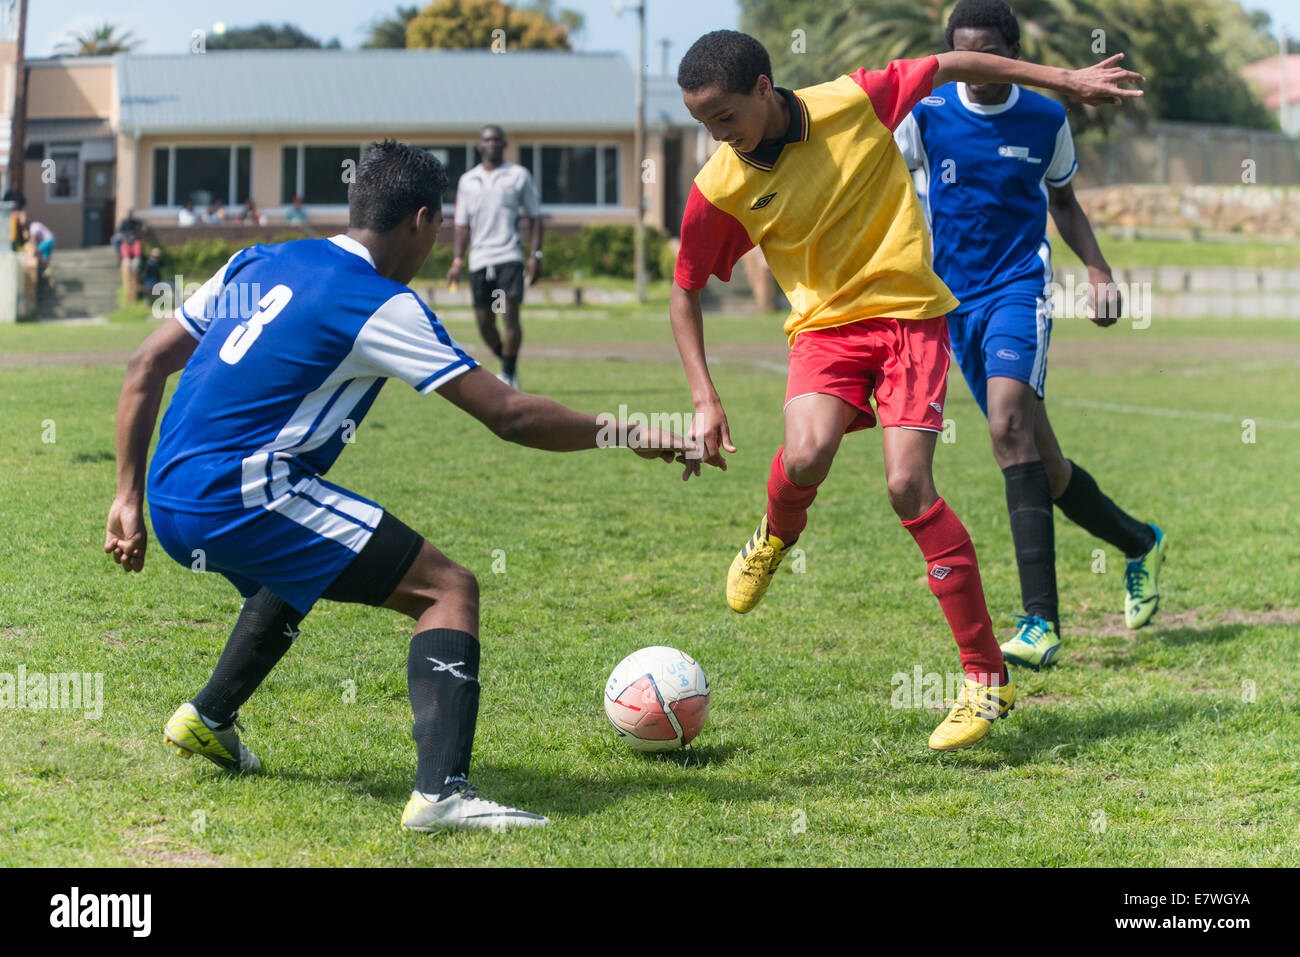 Jeunes joueurs de football de dribbler le ballon, Le Cap, Afrique du Sud Banque D'Images